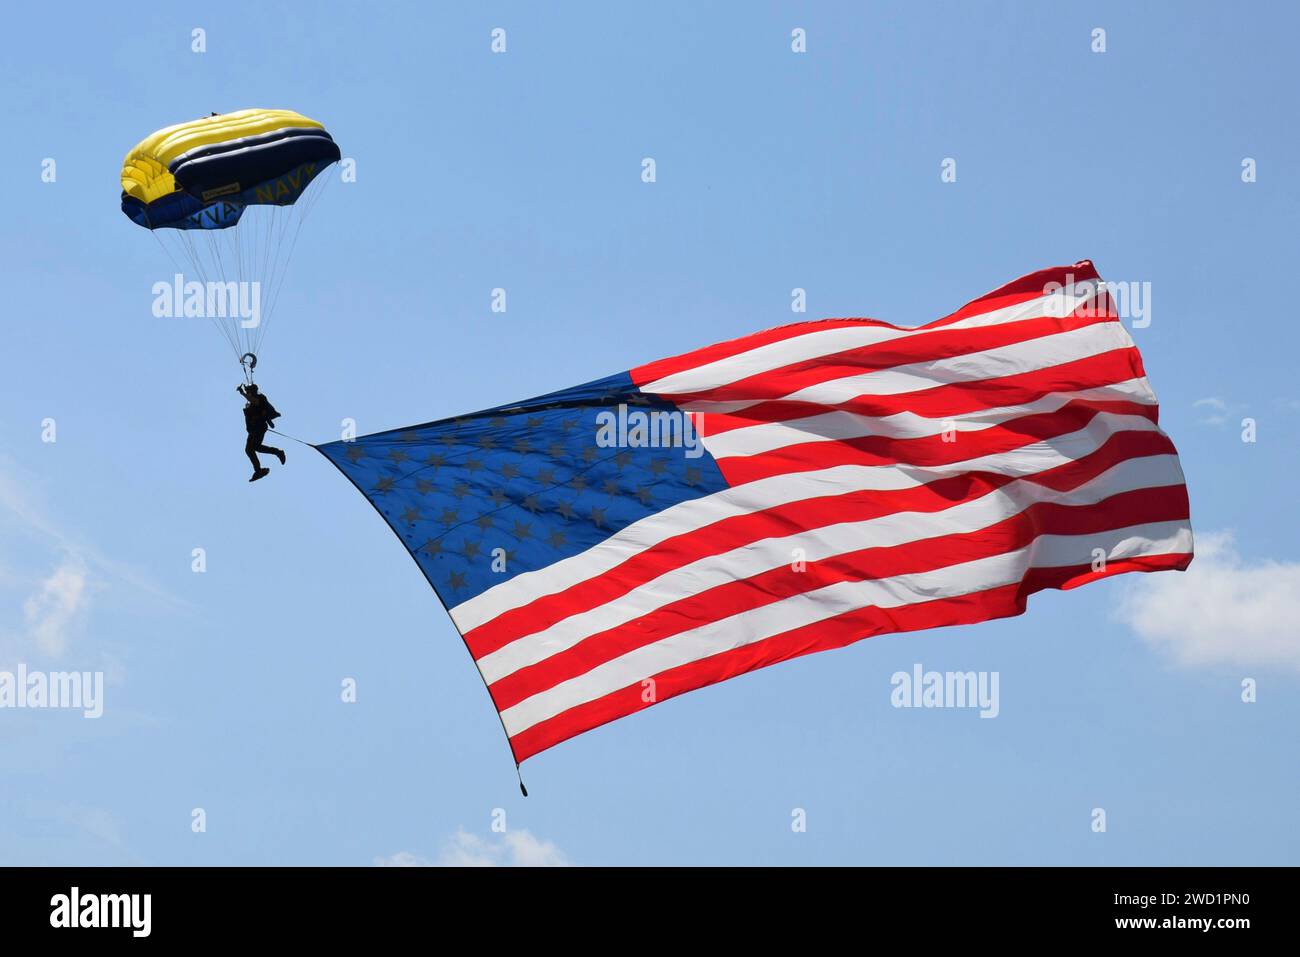 L'équipe de démonstration de parachutistes de l'US Navy, les Leap Frogs, arborant un drapeau américain. Banque D'Images